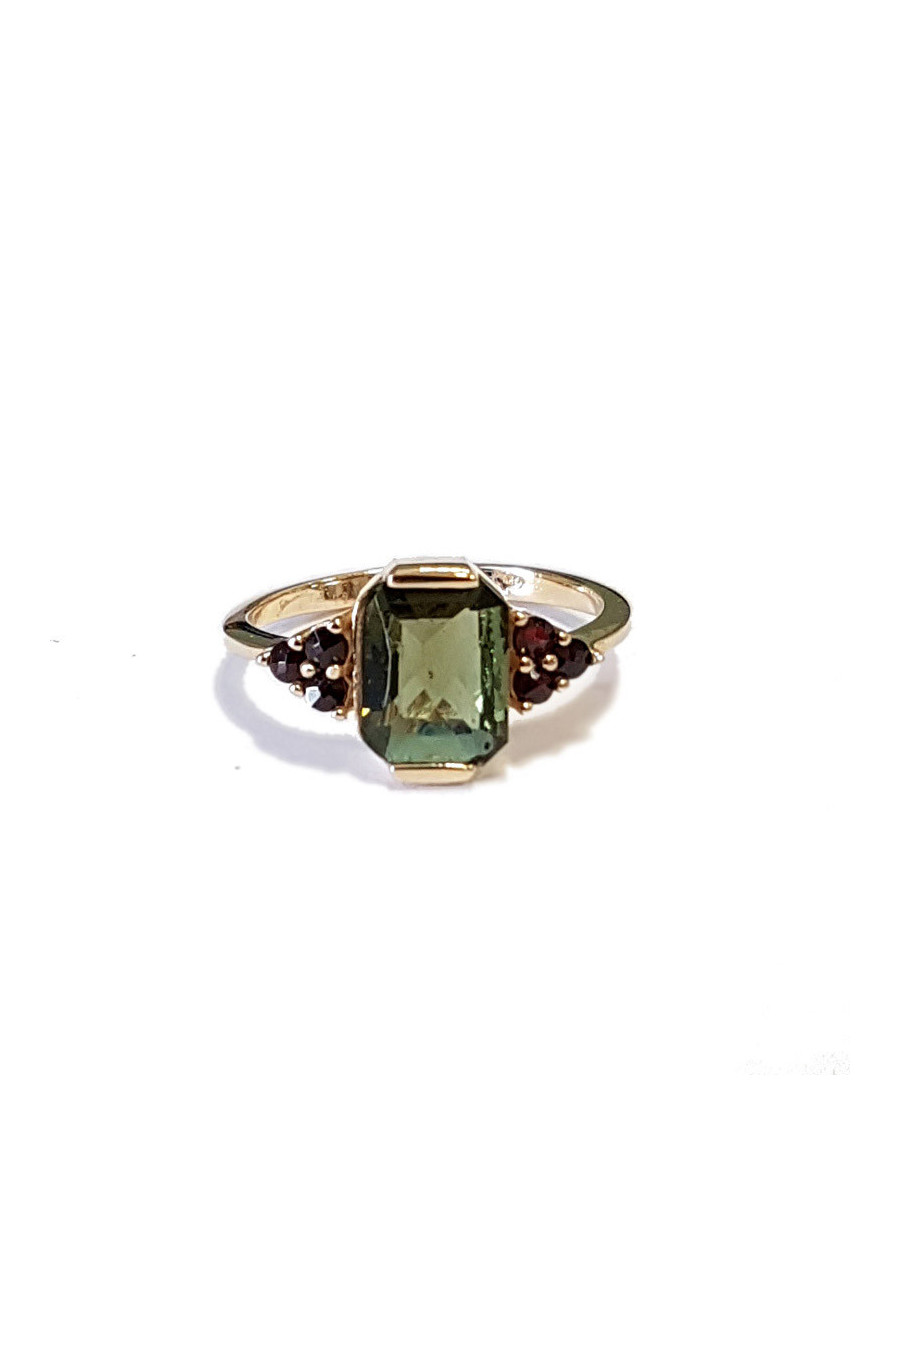 Gold ring, garnet, moldavite